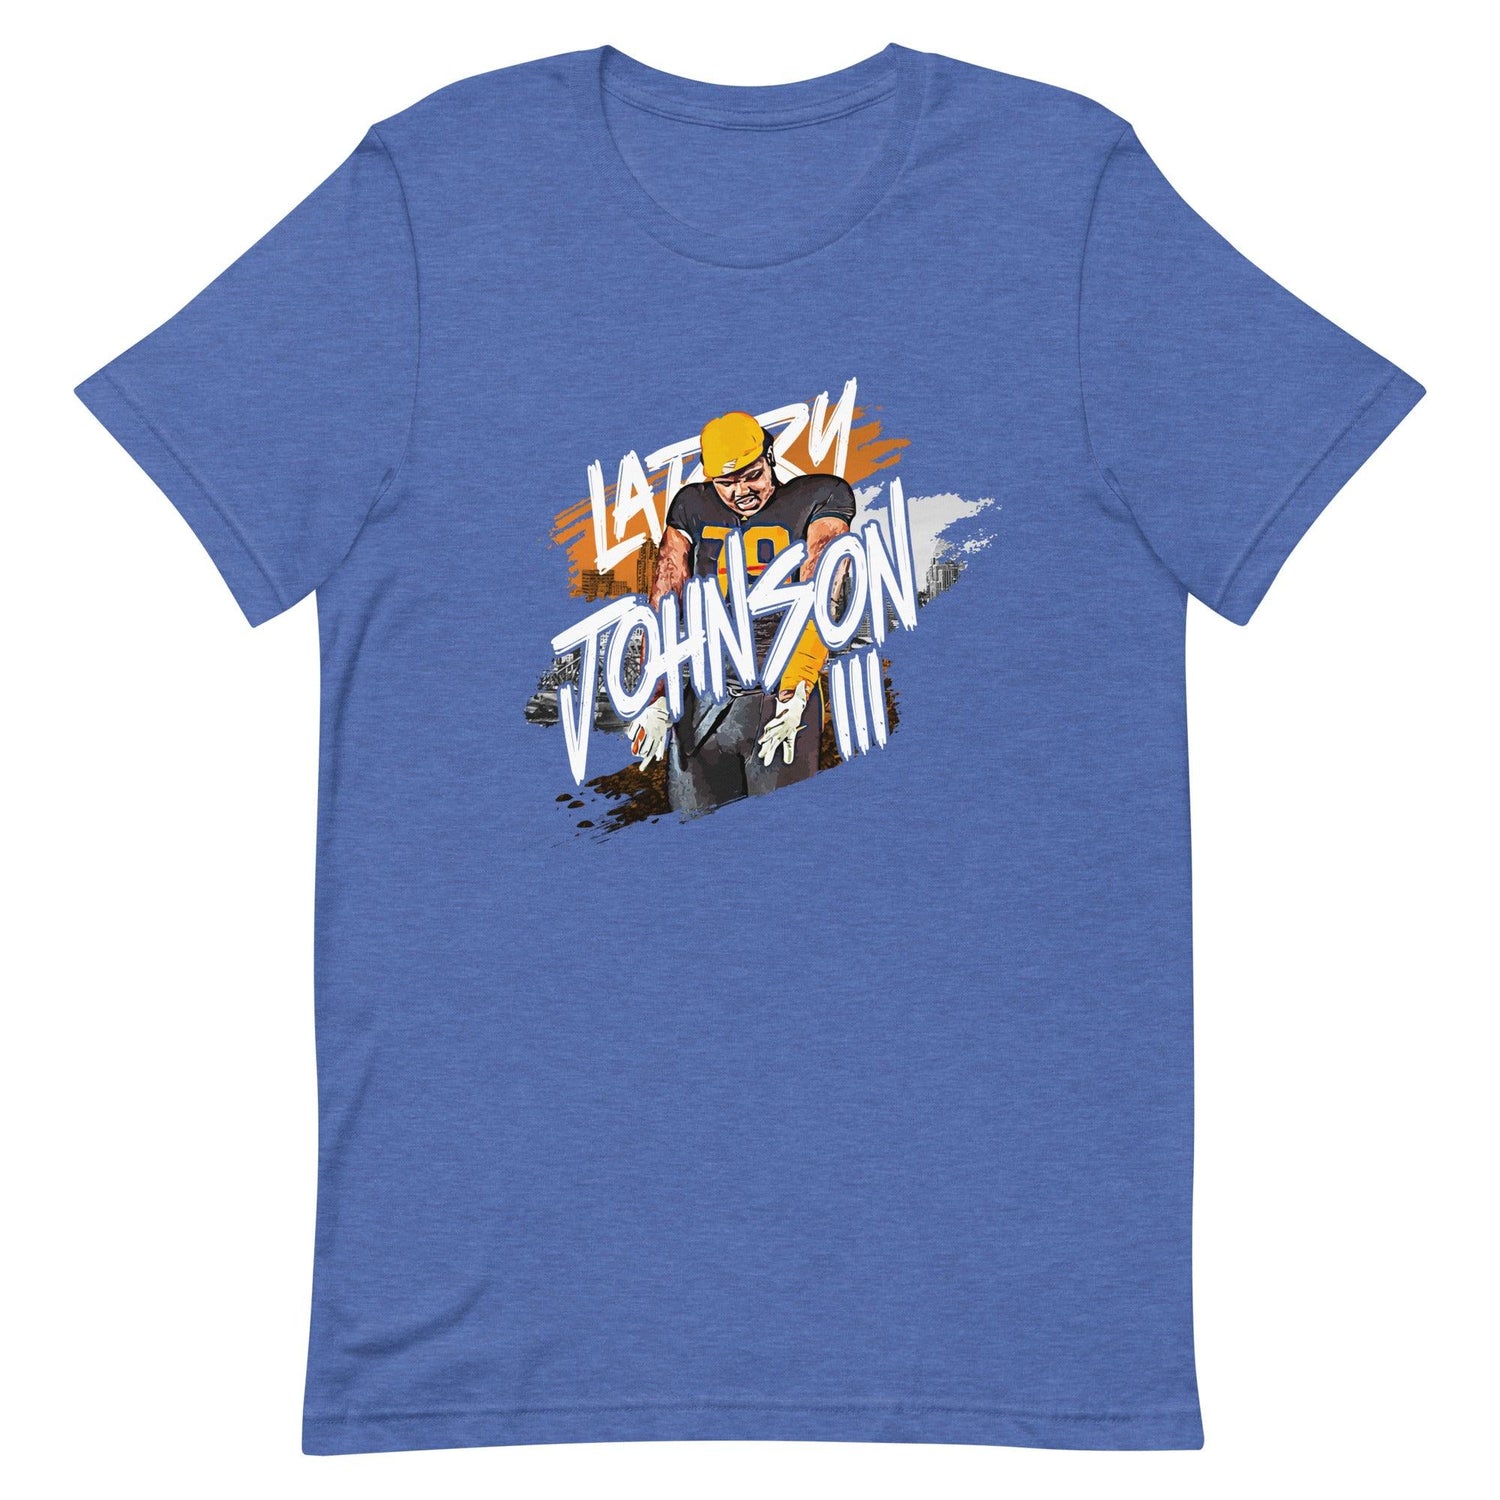 Larry Johnson III "Gameday" t-shirt - Fan Arch